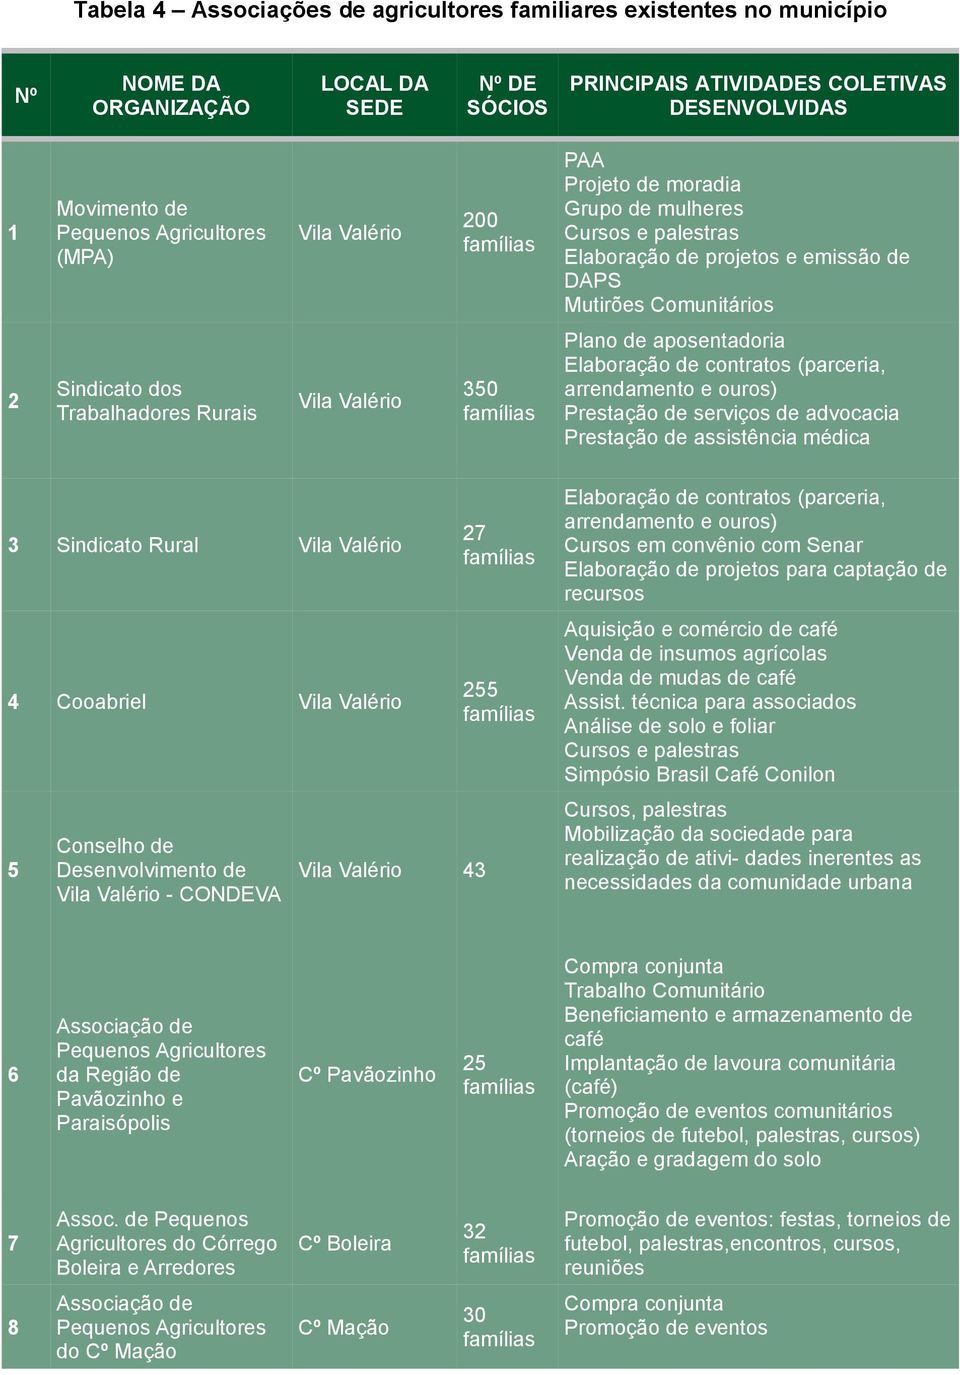 Vila Valério 350 Plano de aposentadoria Elaboração de contratos (parceria, arrendamento e ouros) Prestação de serviços de advocacia Prestação de assistência médica 3 Sindicato Rural Vila Valério 4